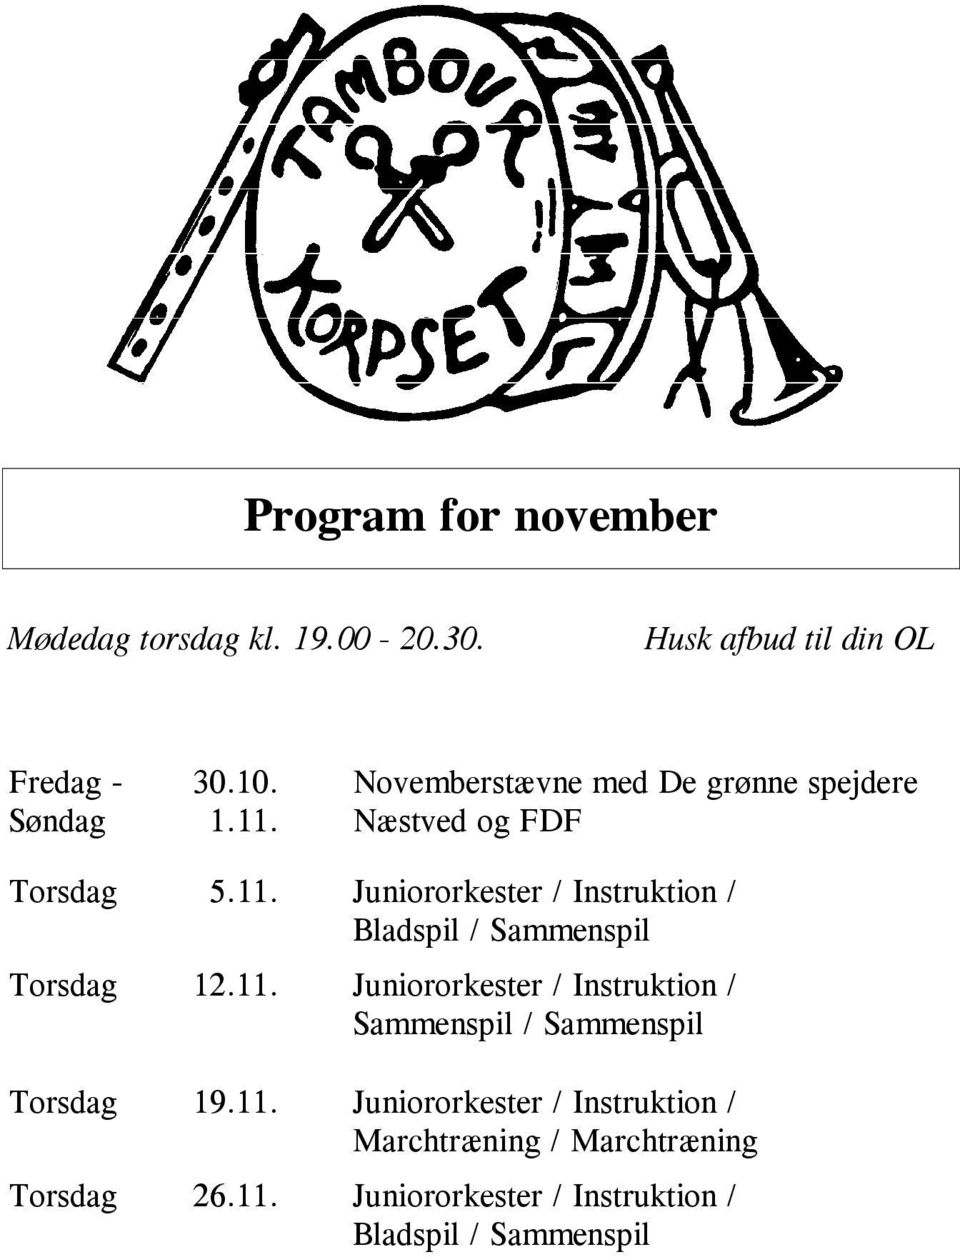 Juniororkester / Instruktion / Bladspil / Sammenspil Torsdag 12.11.